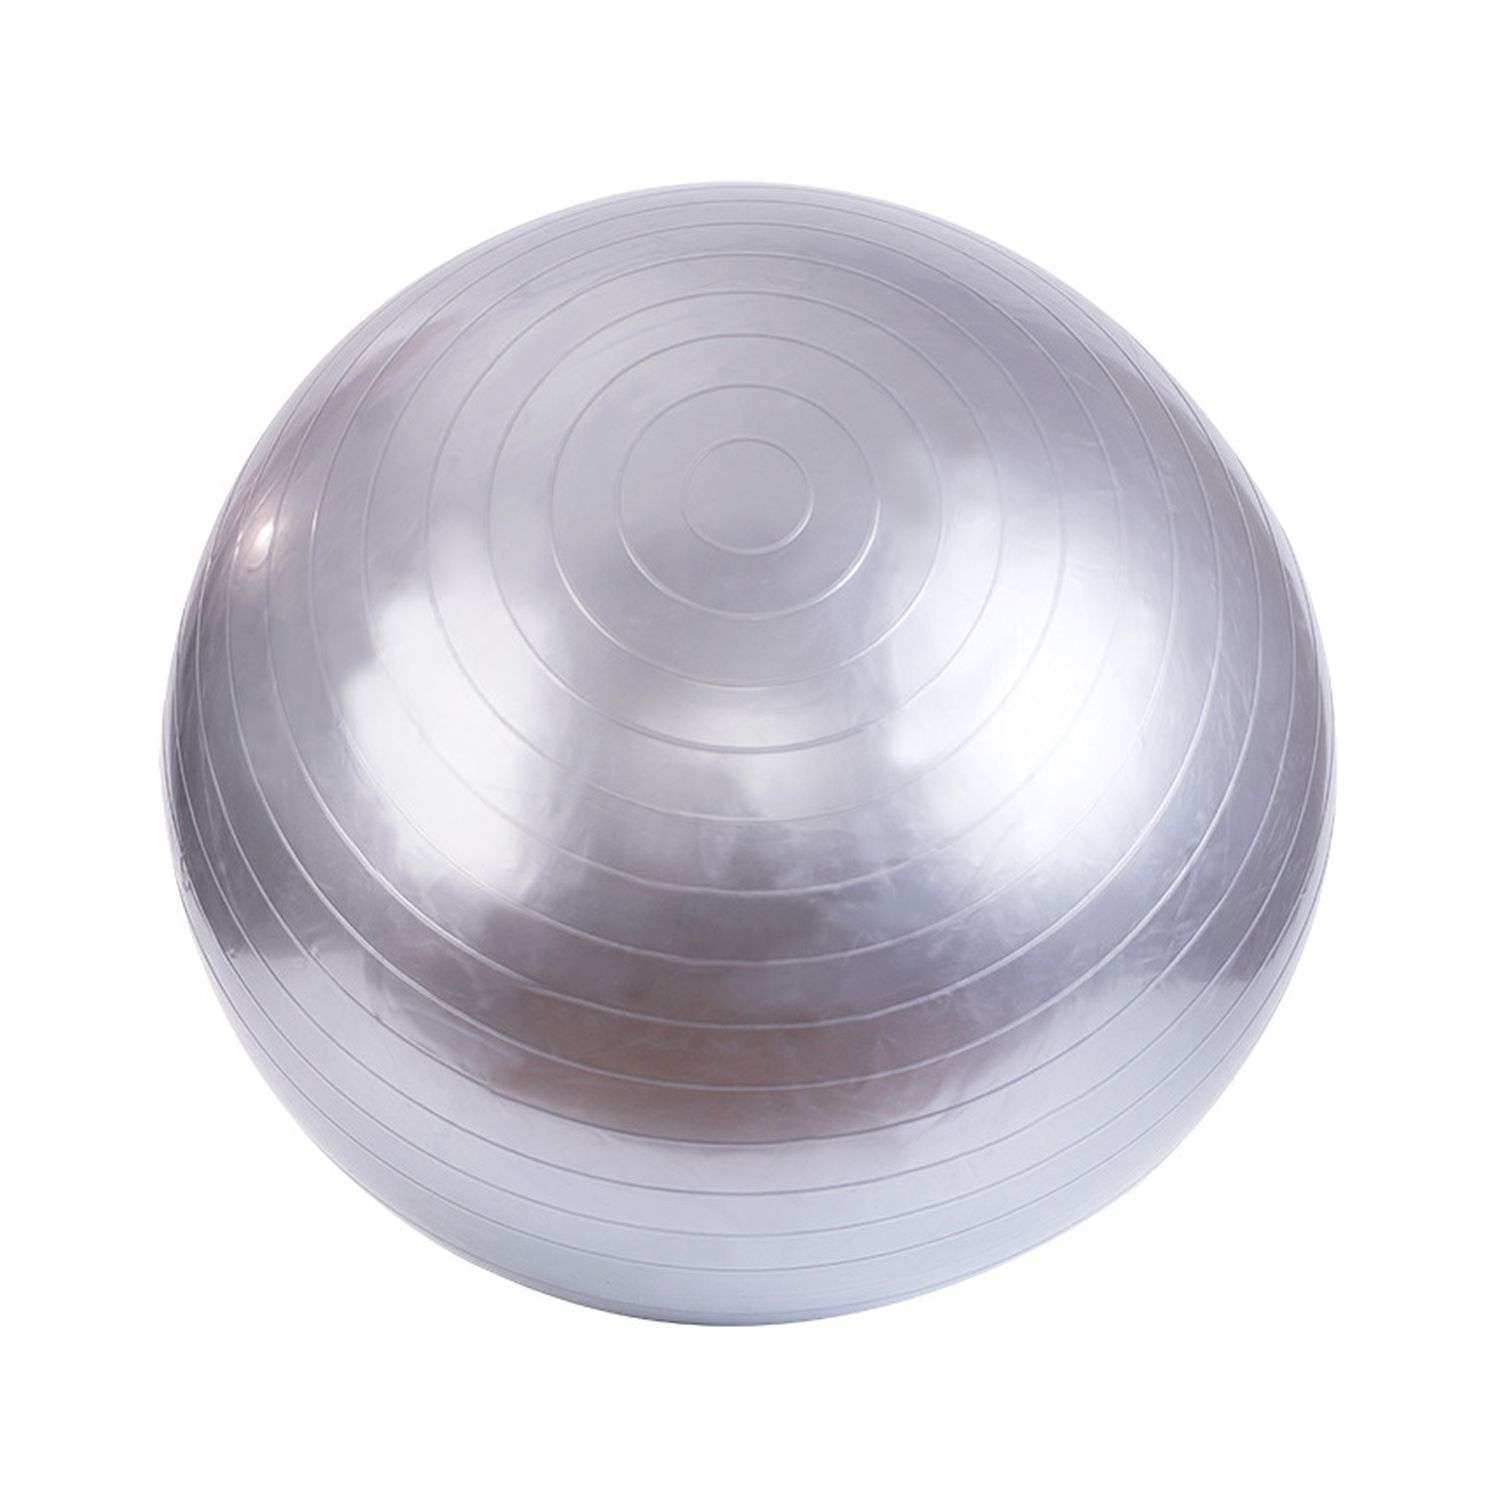 Фитбол Beroma с антивзрывным эффектом 55 см серый - фото 1